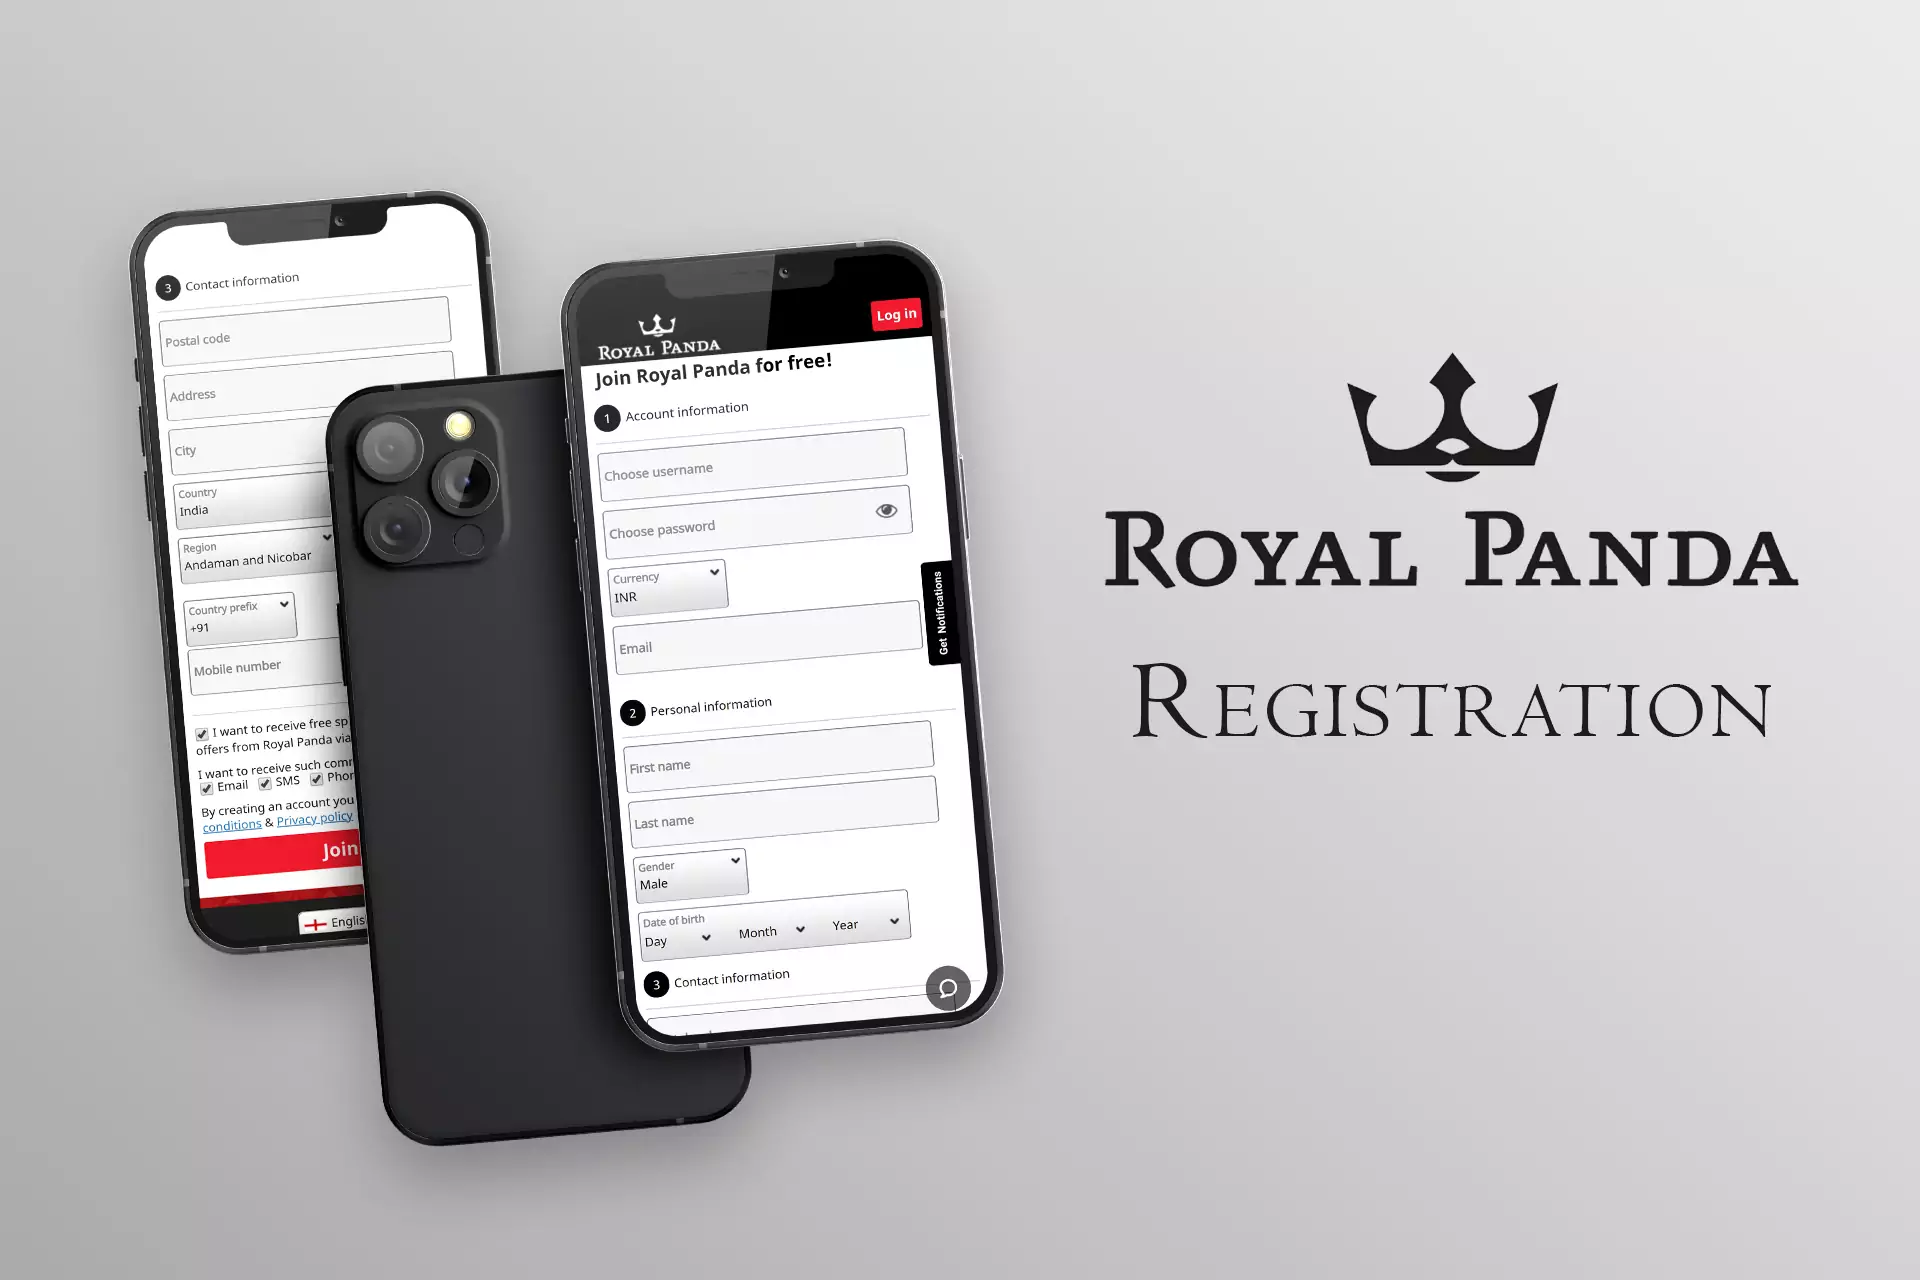 Run the app of Royal Panda and sign up.